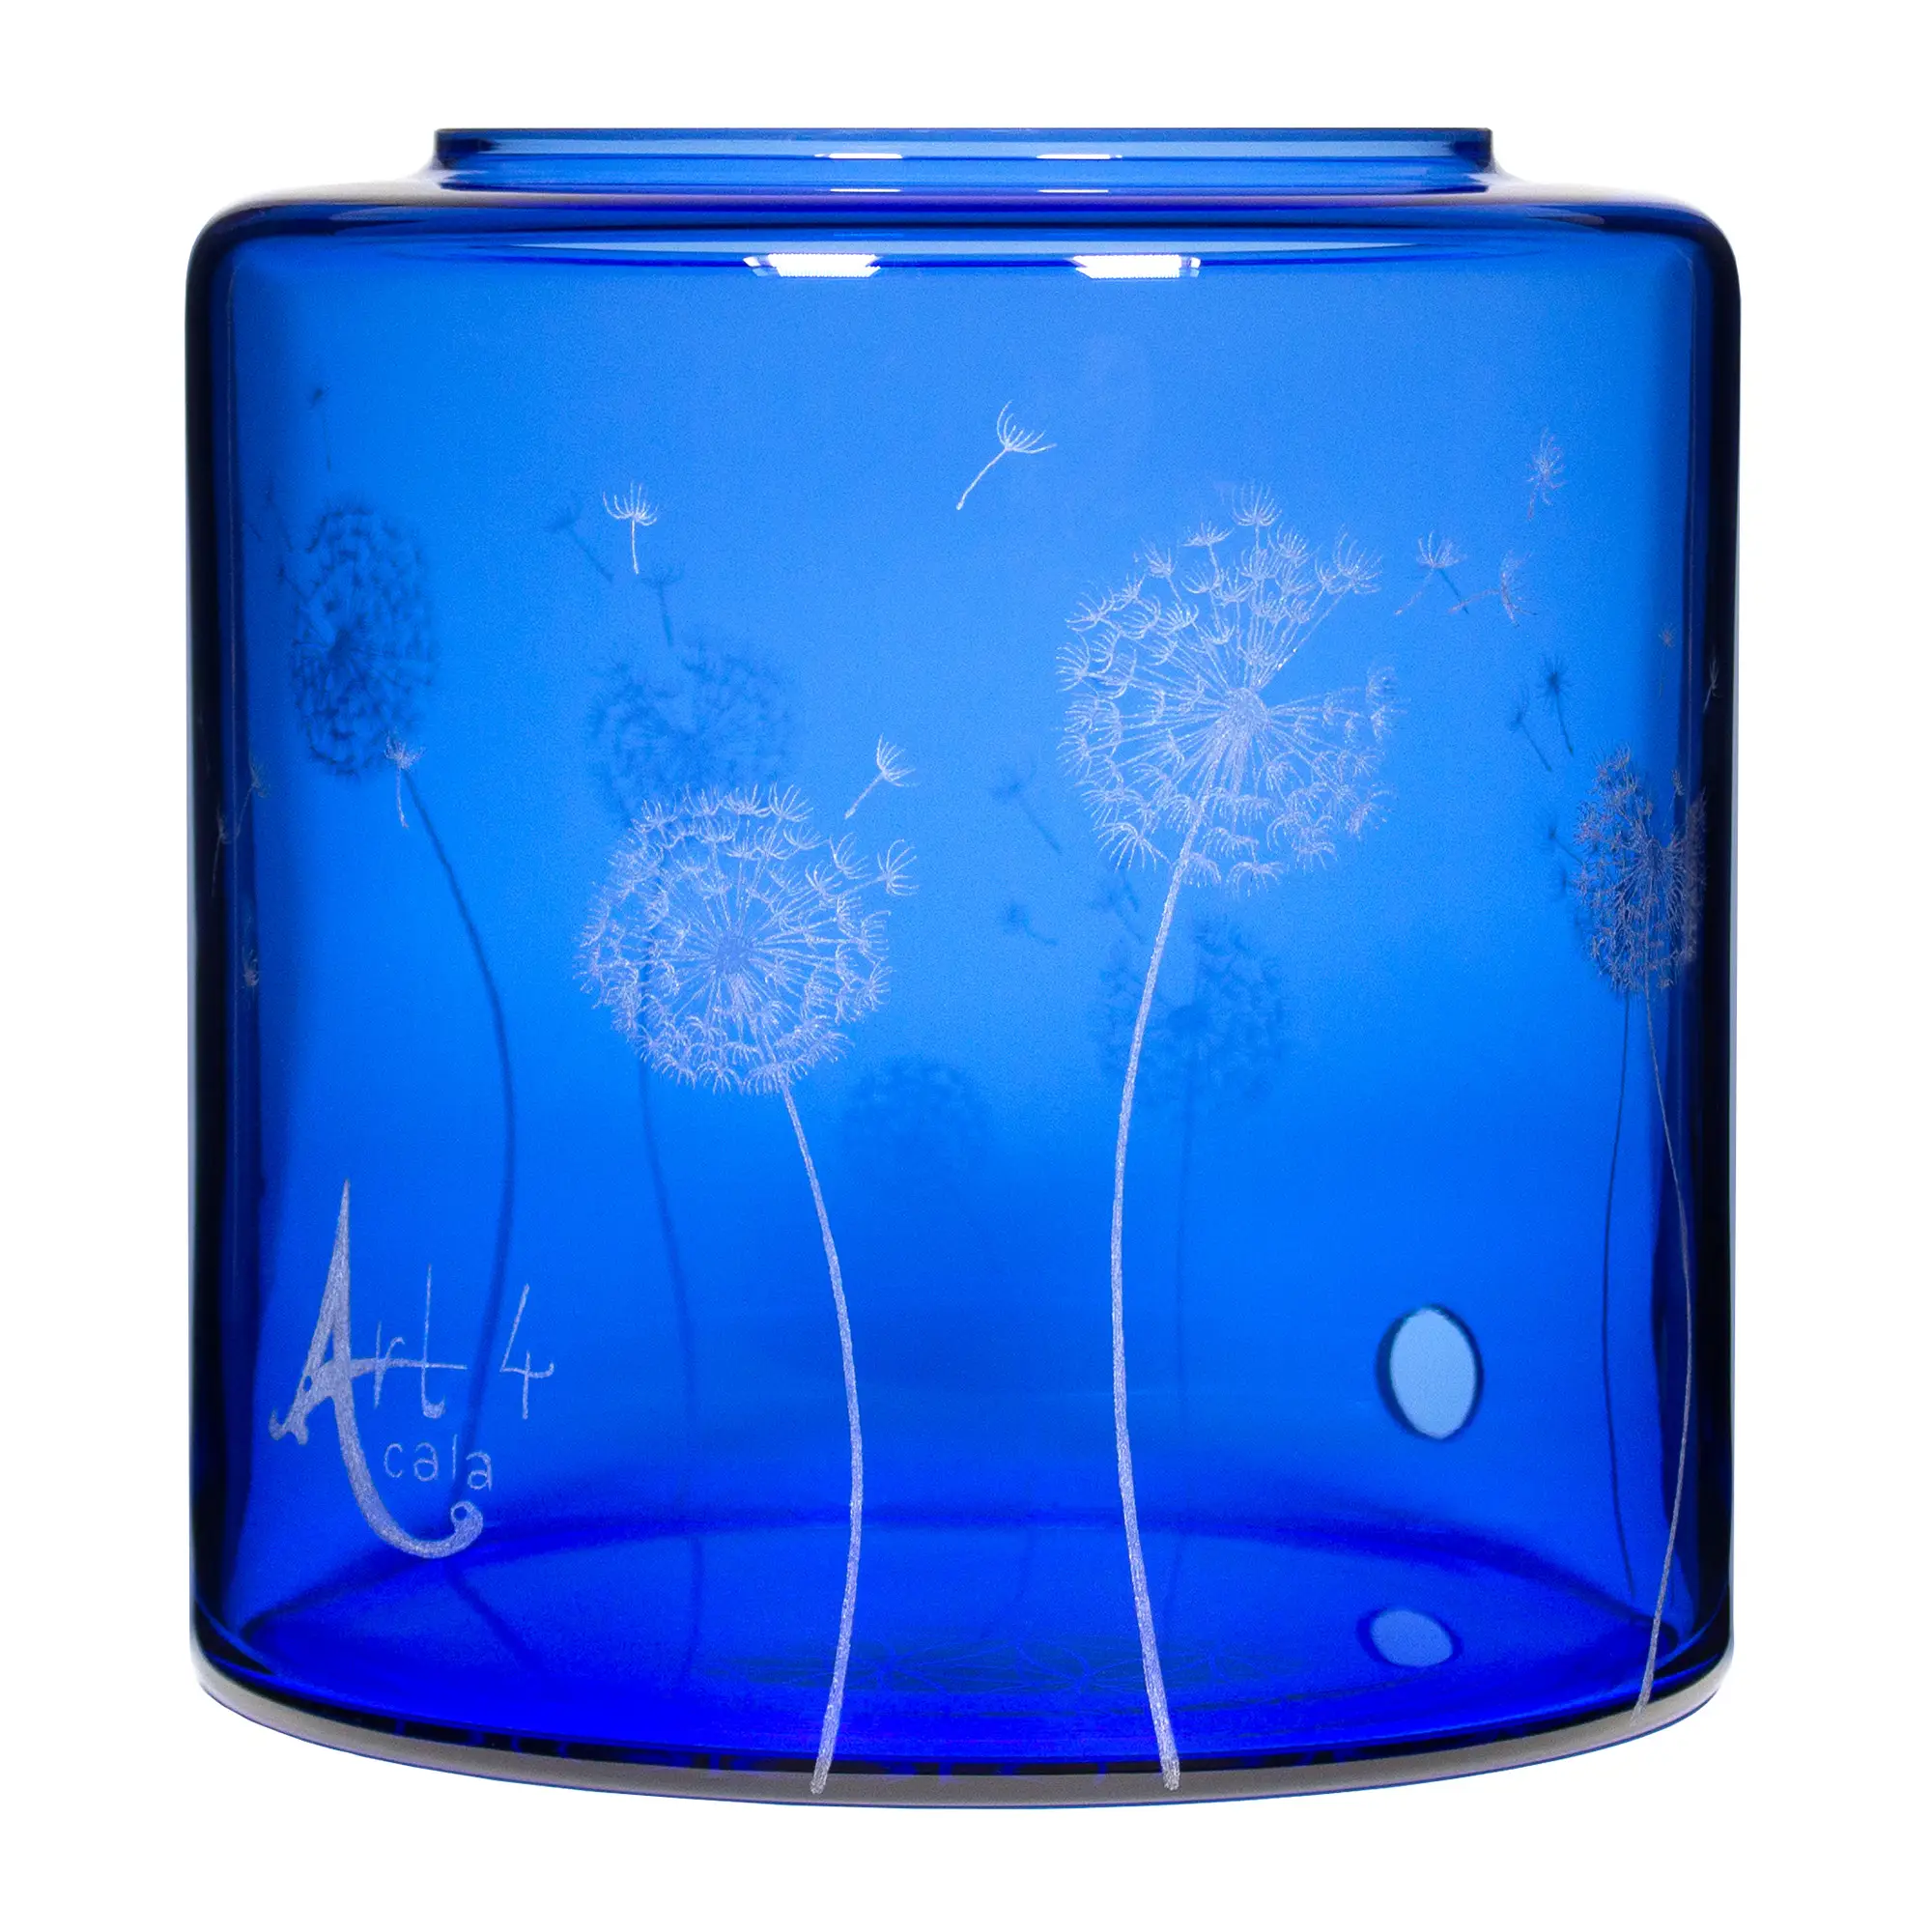 Ein Acala Wasserfilter Mini mit einer Handgravur. Die Gravur zeigt, auf blauem Glas, ganz viele Pusteblumen und einige samen die aus der Pusteblume herausfliegen.Ansicht von links.